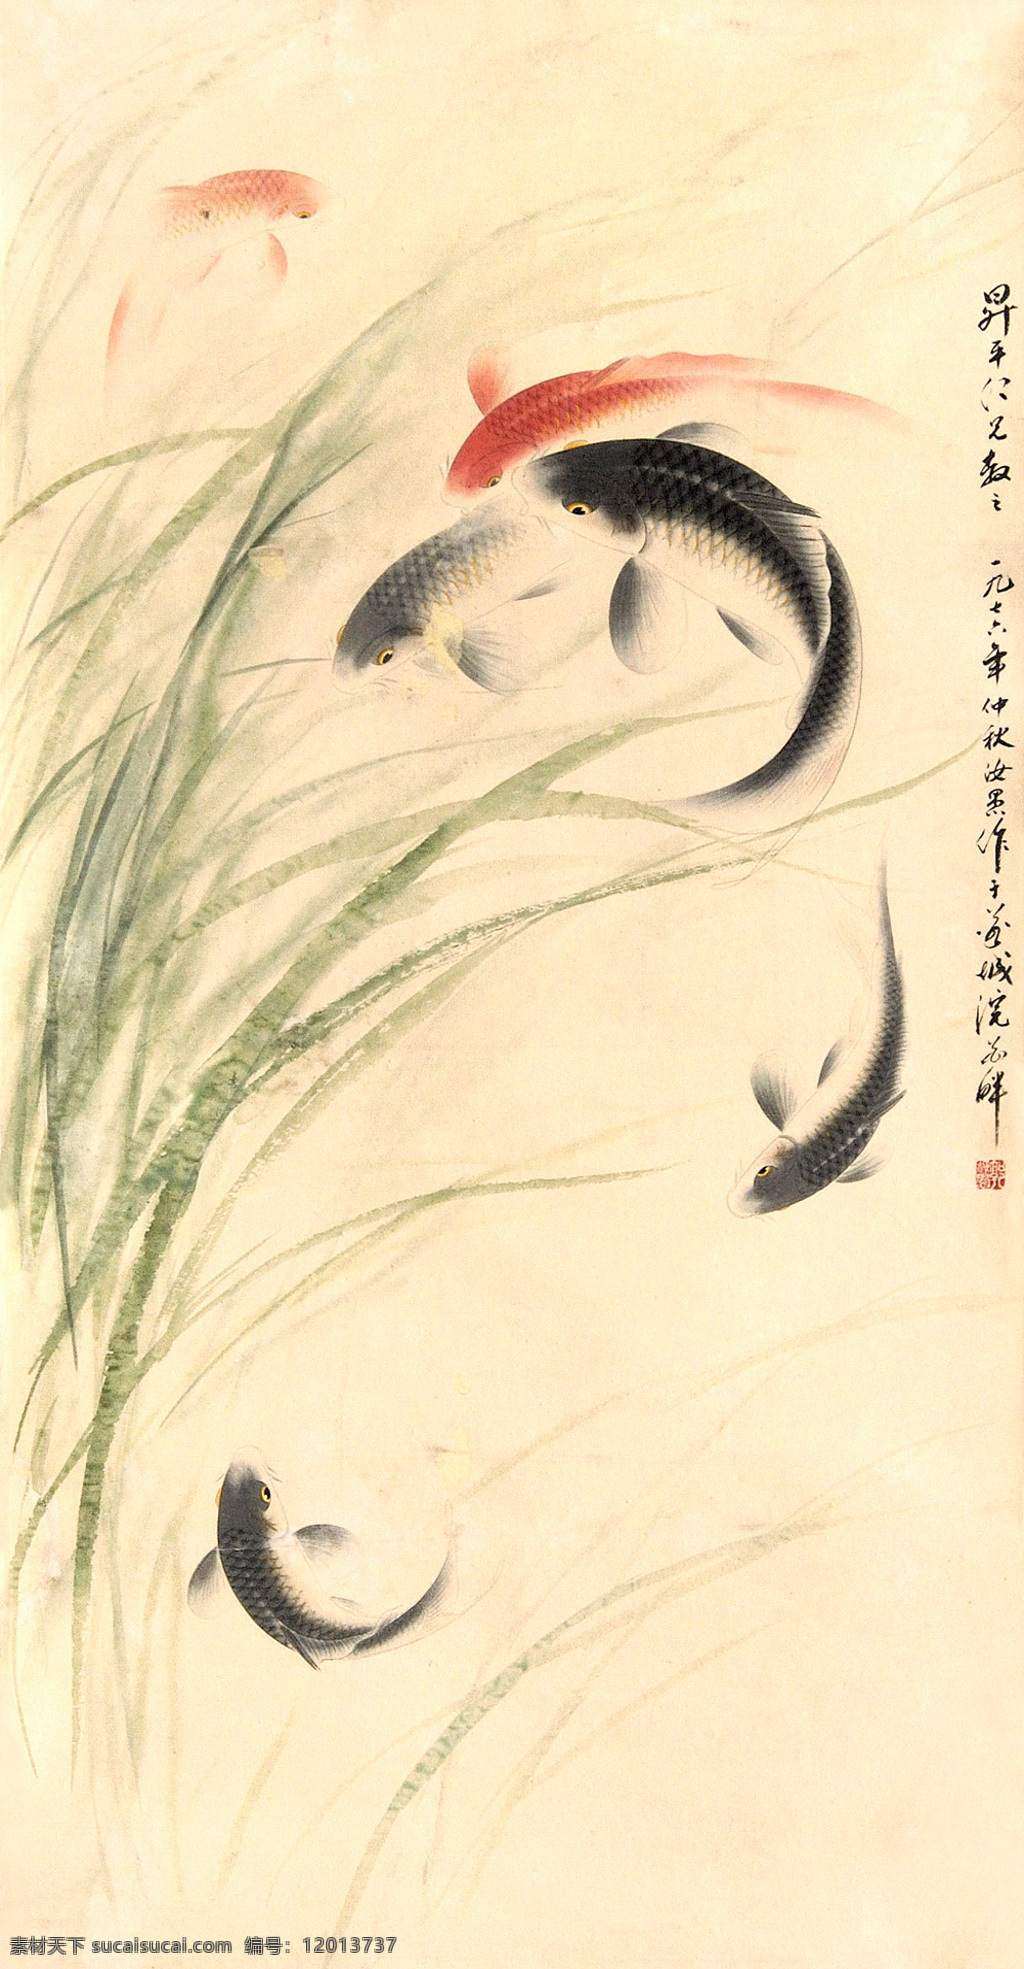 鱼戏 工笔 水墨绘画 写意 国画 建筑 传统纹样 风景 水草 鲤鱼 中国风 绘画书法 文化艺术